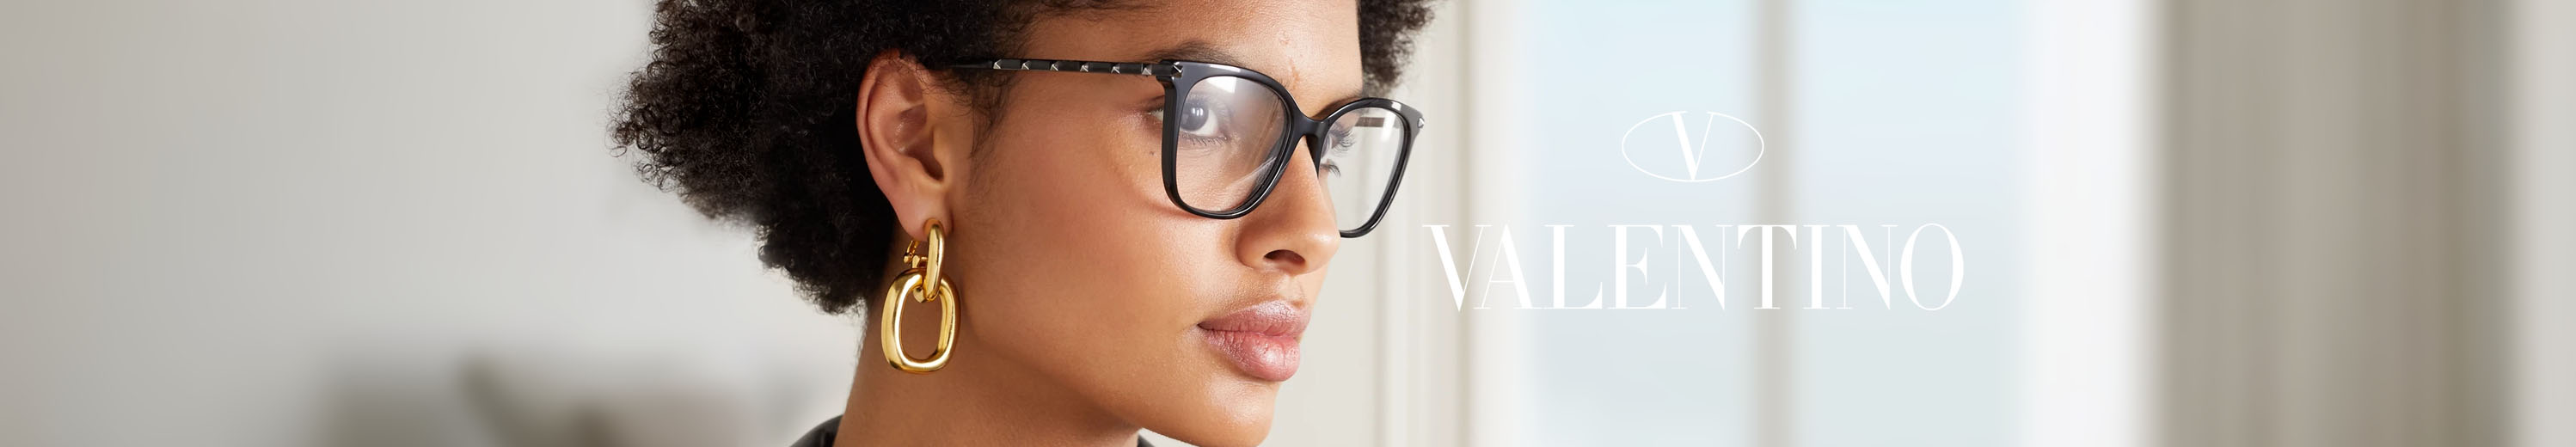 Valentino Eyeglasses for Women